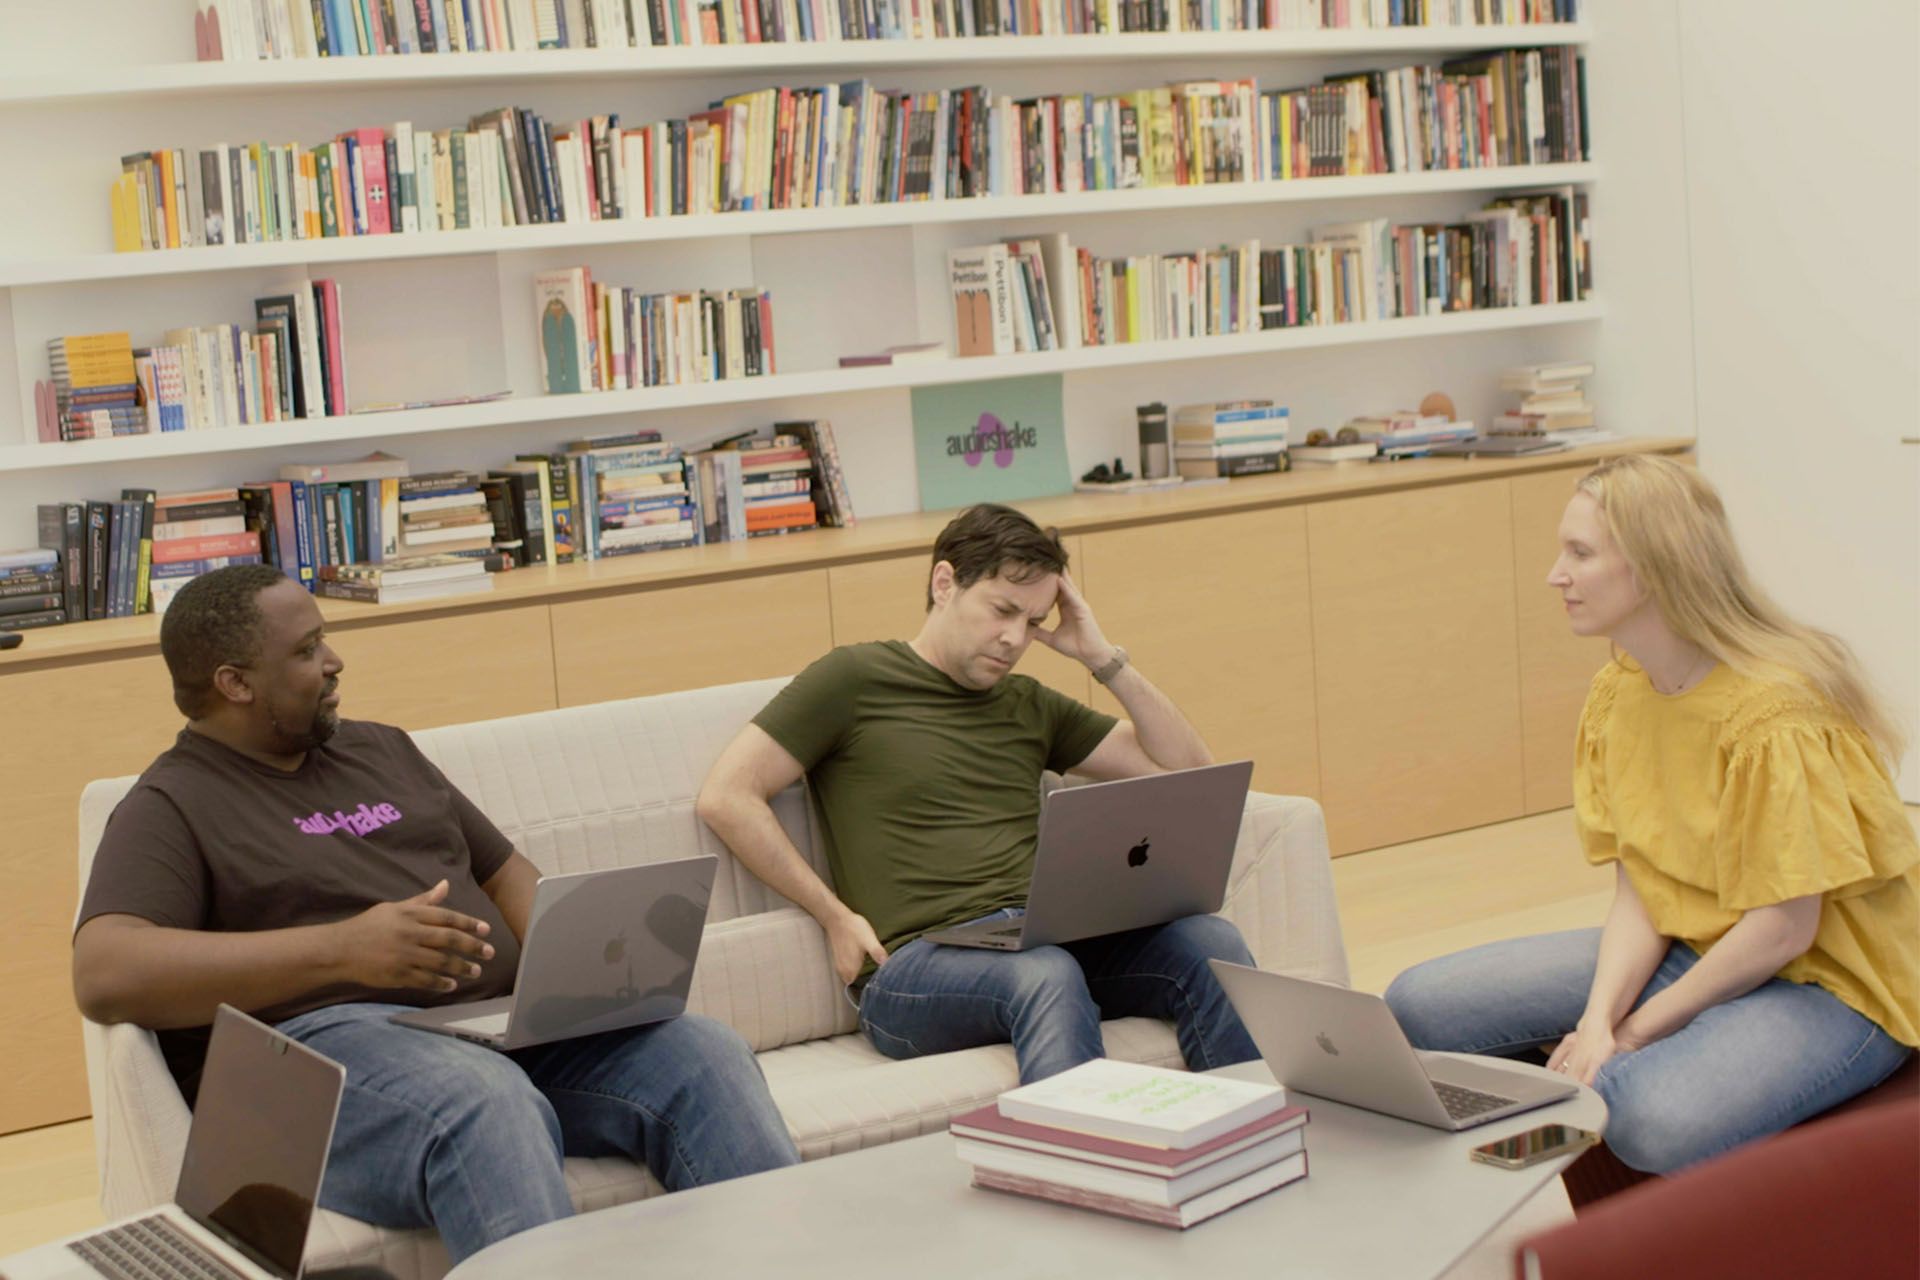 Trois personnes discutent sur un canapé placé devant une bibliothèque